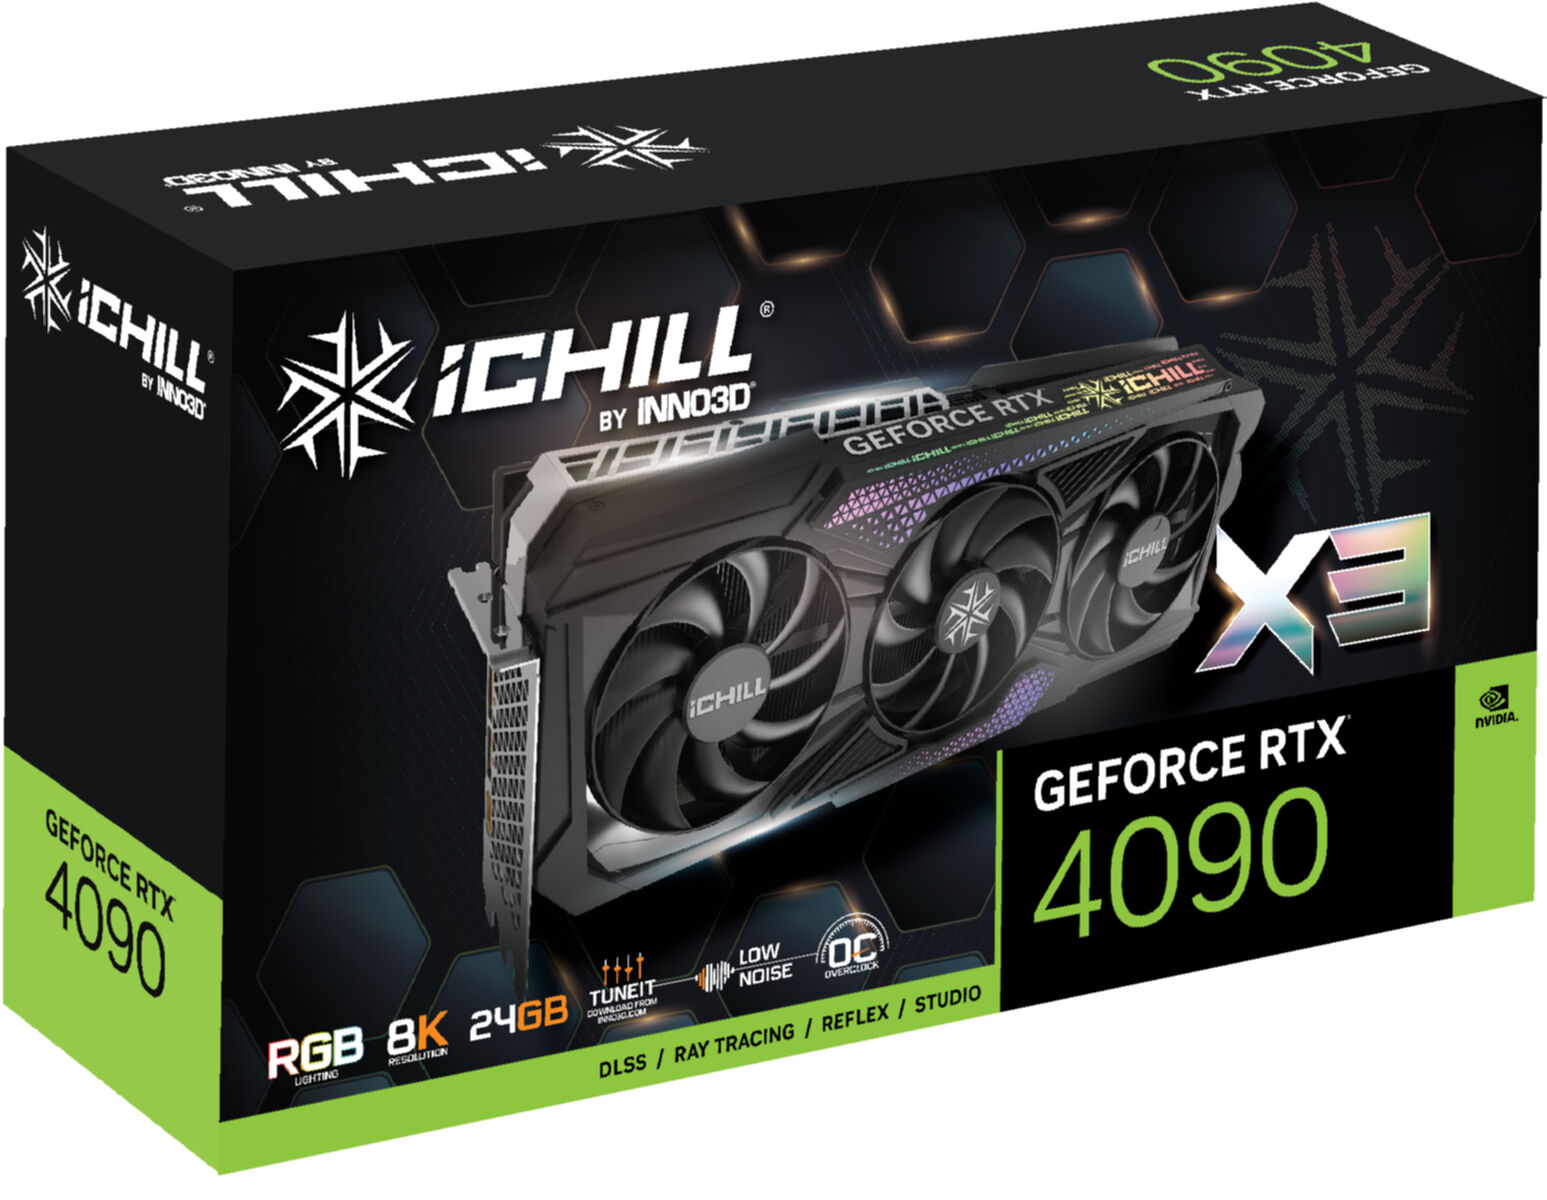 X3 INNO3D 4090 Grafikkarte) RTX GeForce (NVIDIA, ICHILL